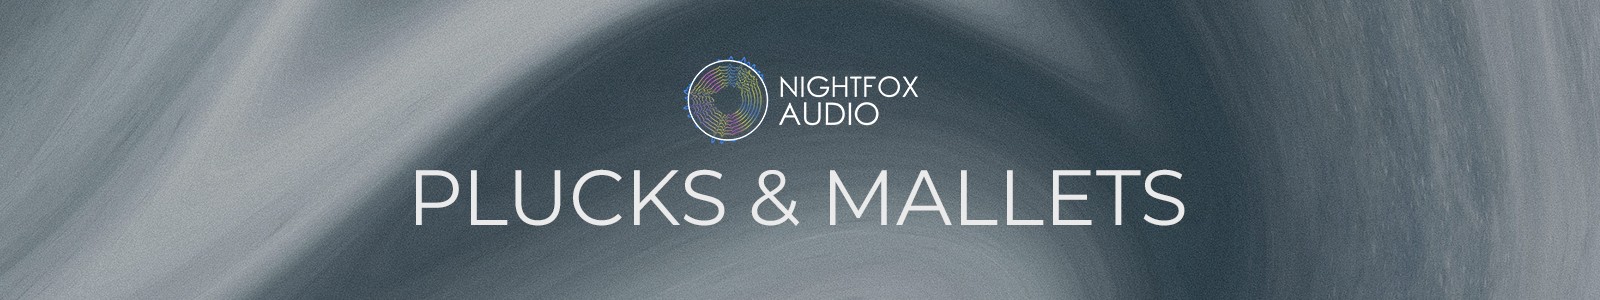 Nightfox Audio Plucks & Mallets